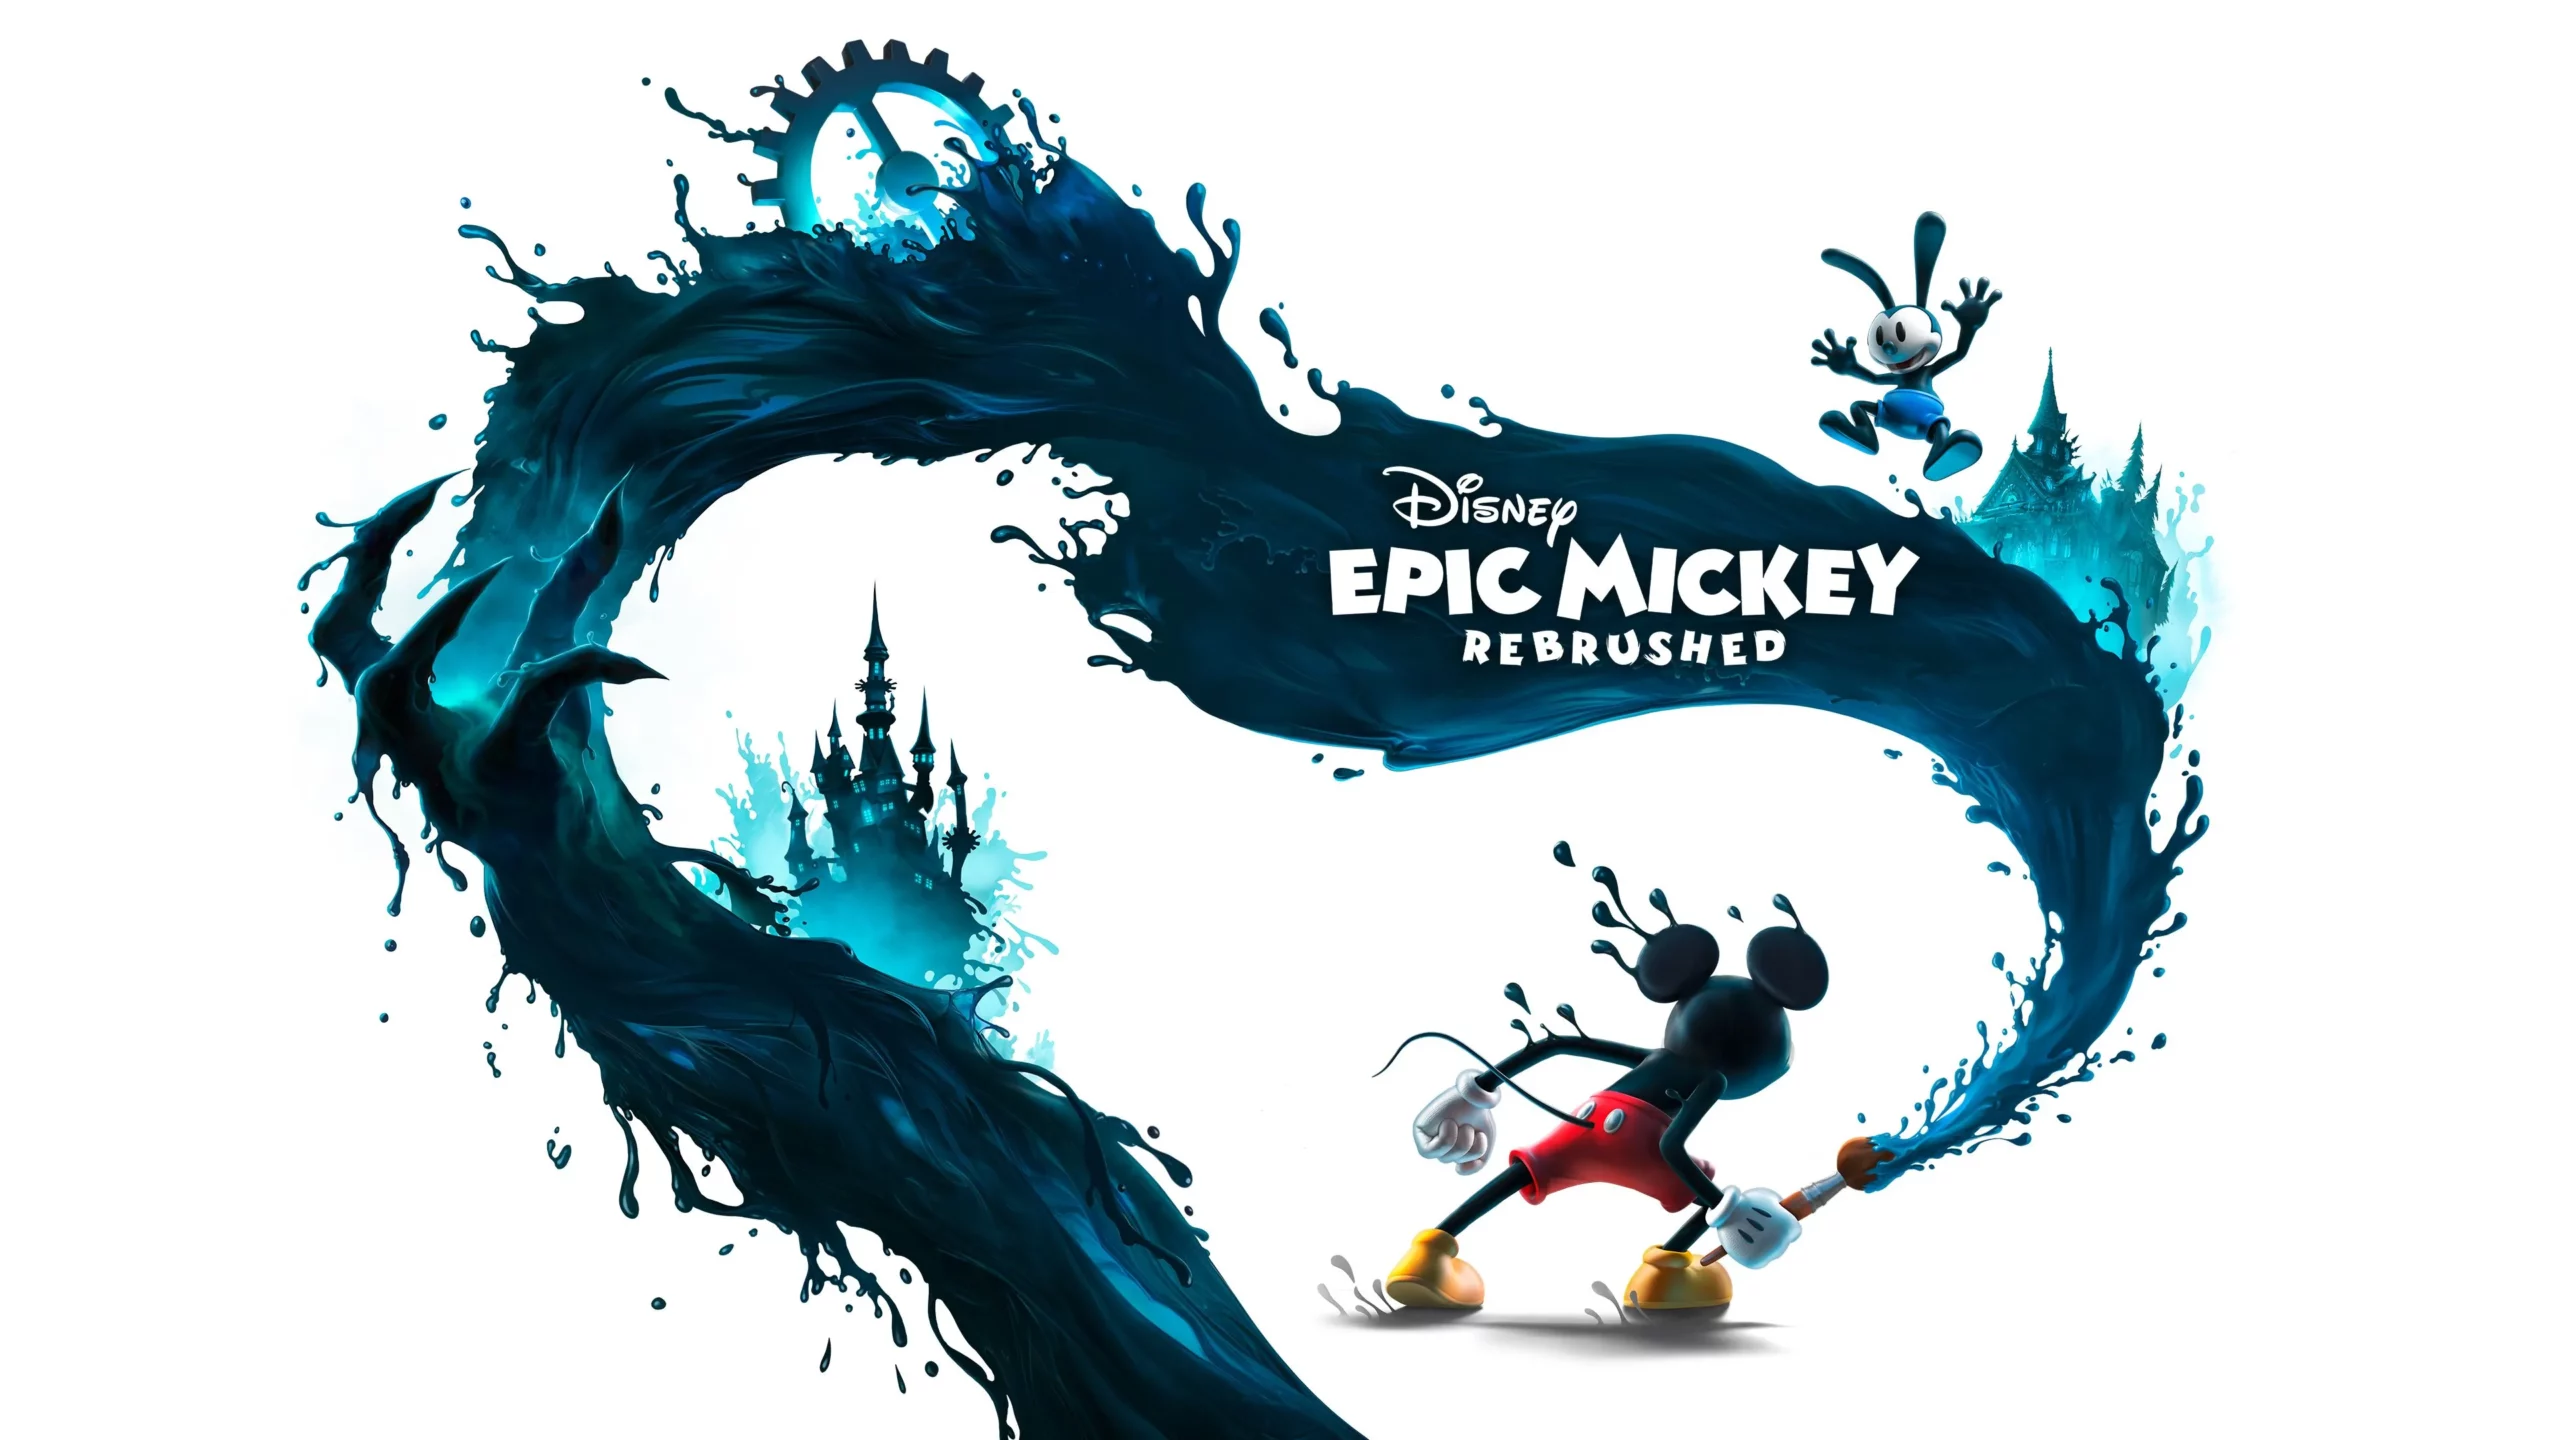 Tante nuove informazioni per Diseny Epic Mickey: Rebrushed